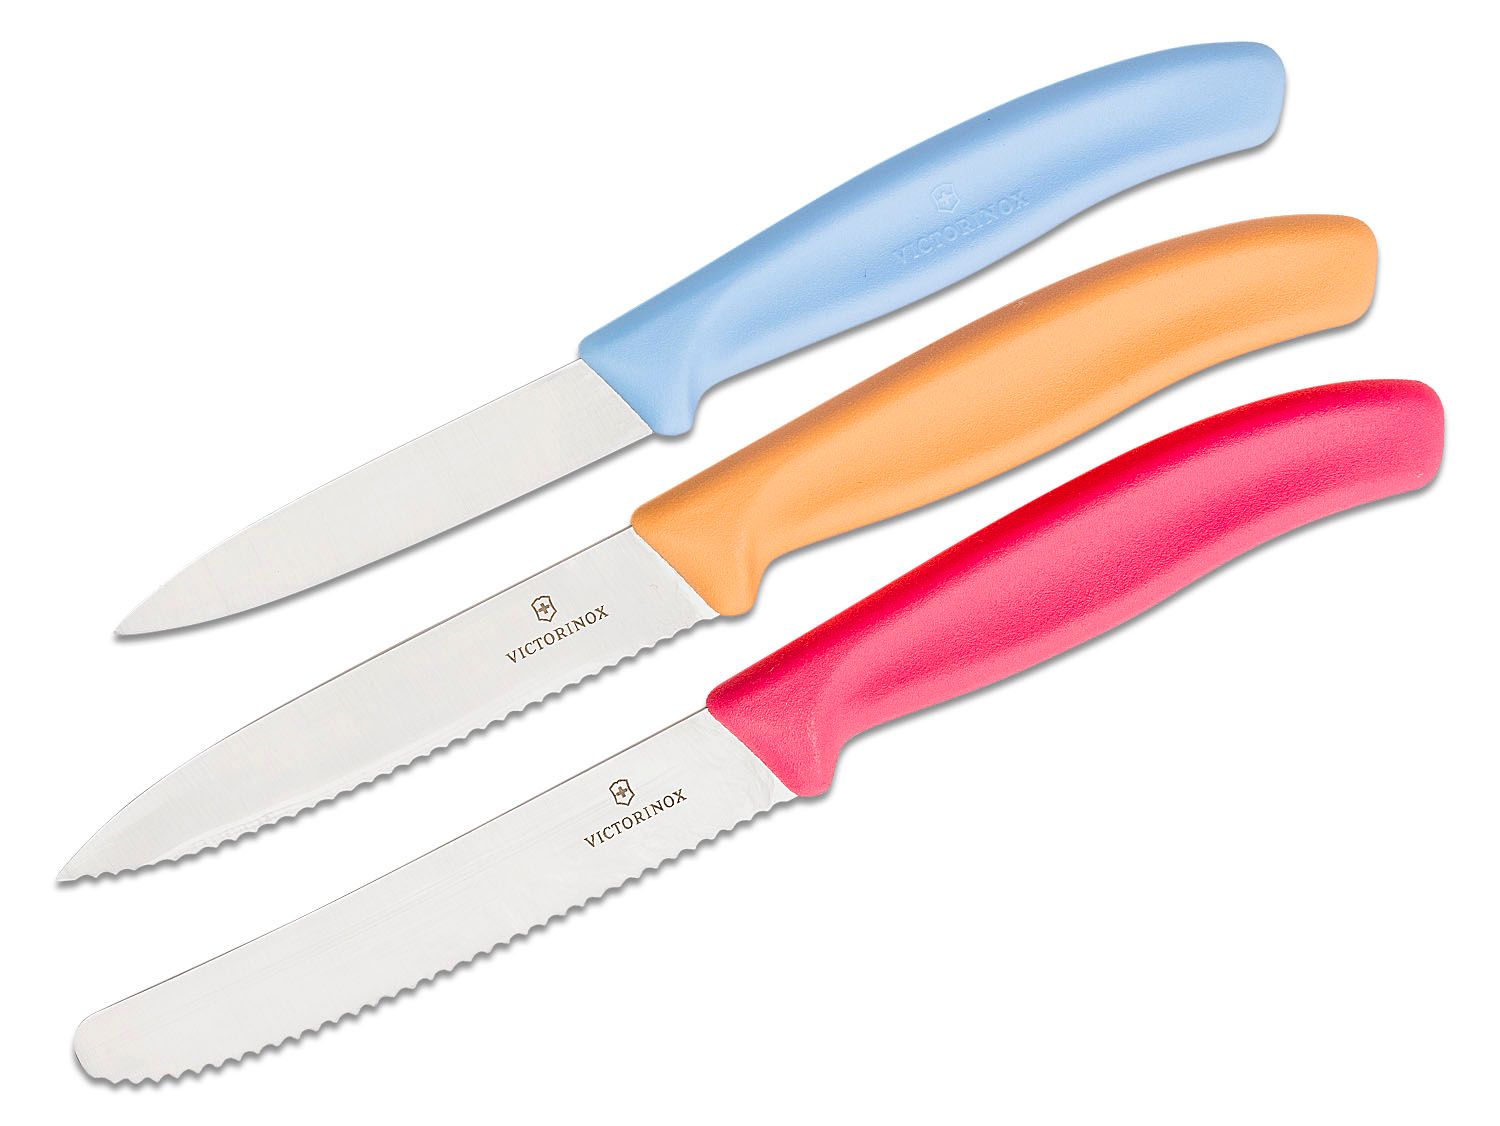 Victorinox paring knife set green-pink-yellow-orange 6.7606.L114